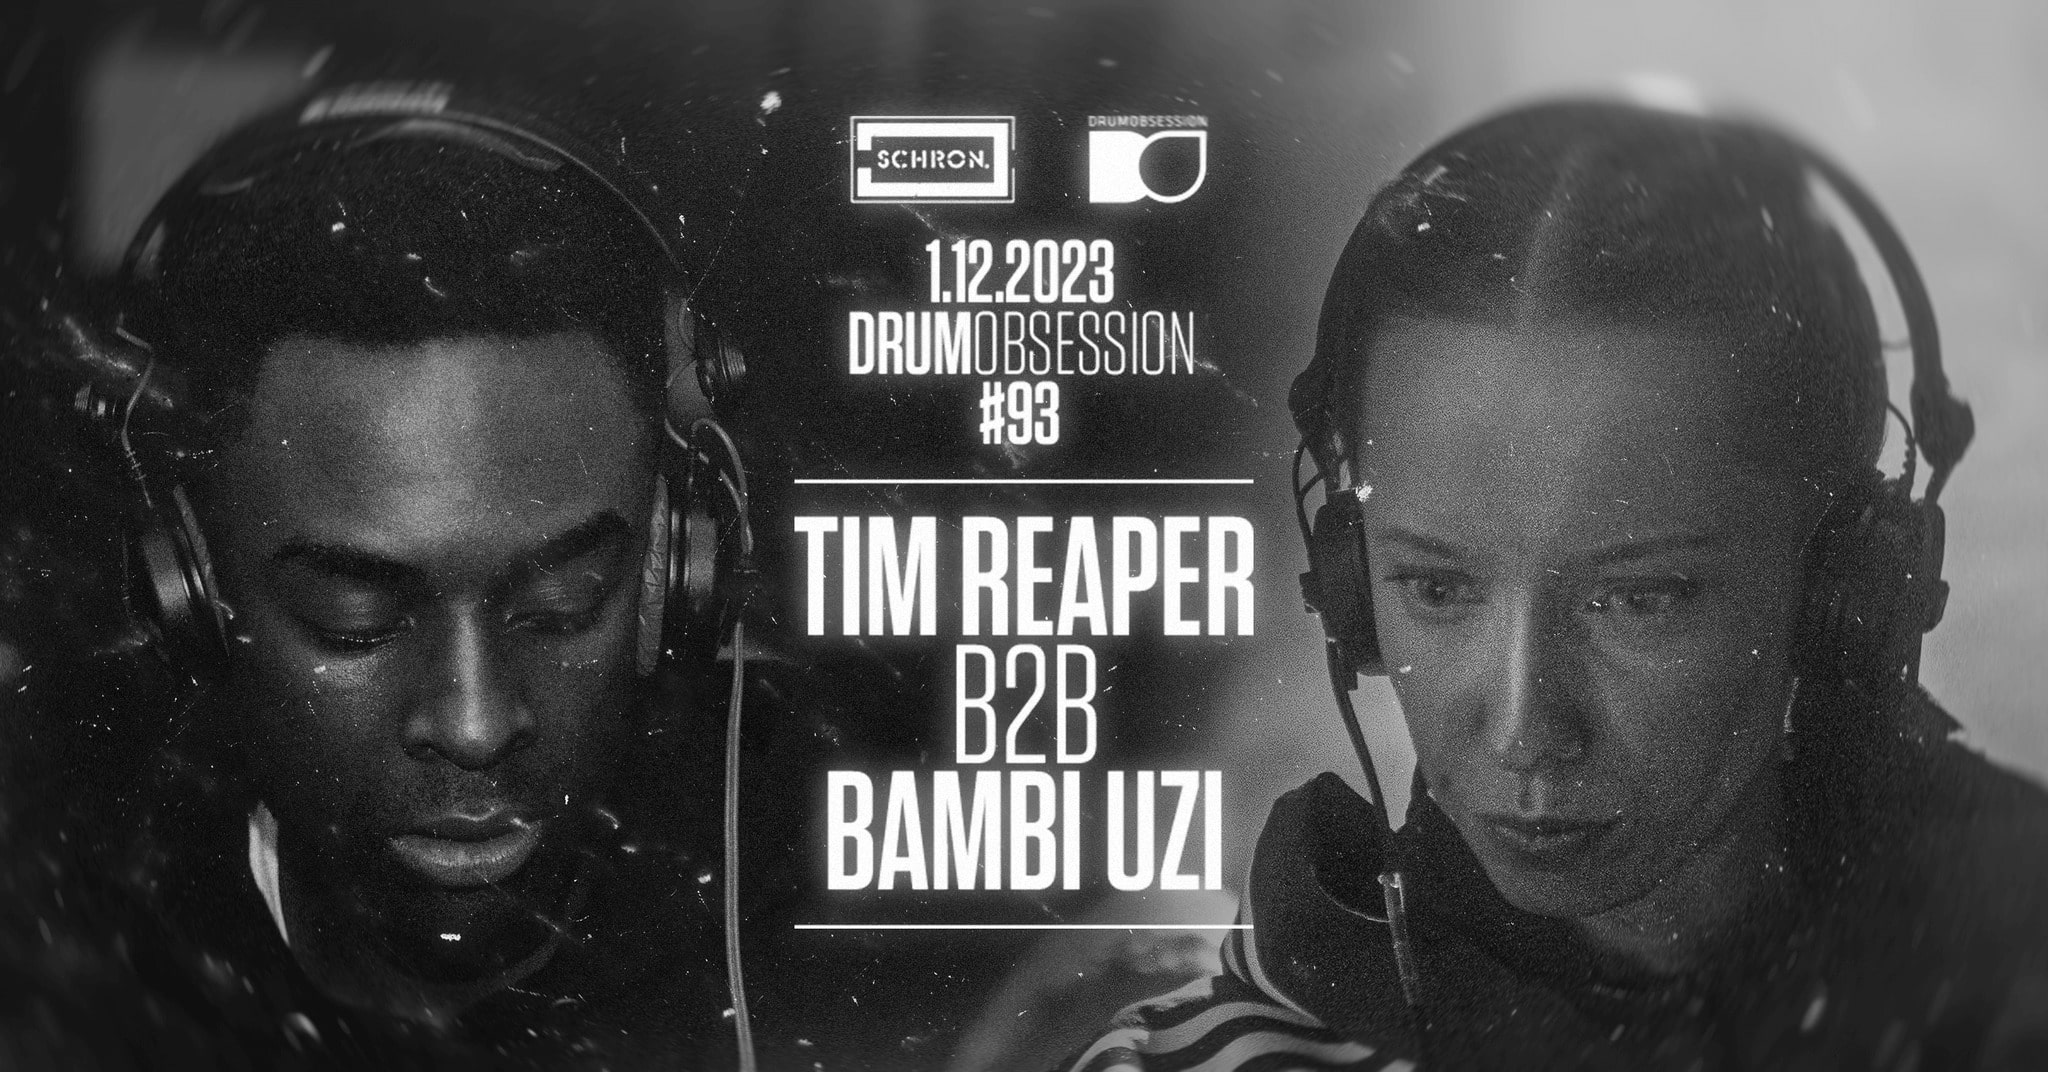 DrumObsession #93 with TIM REAPER b2b BAMBI UZI